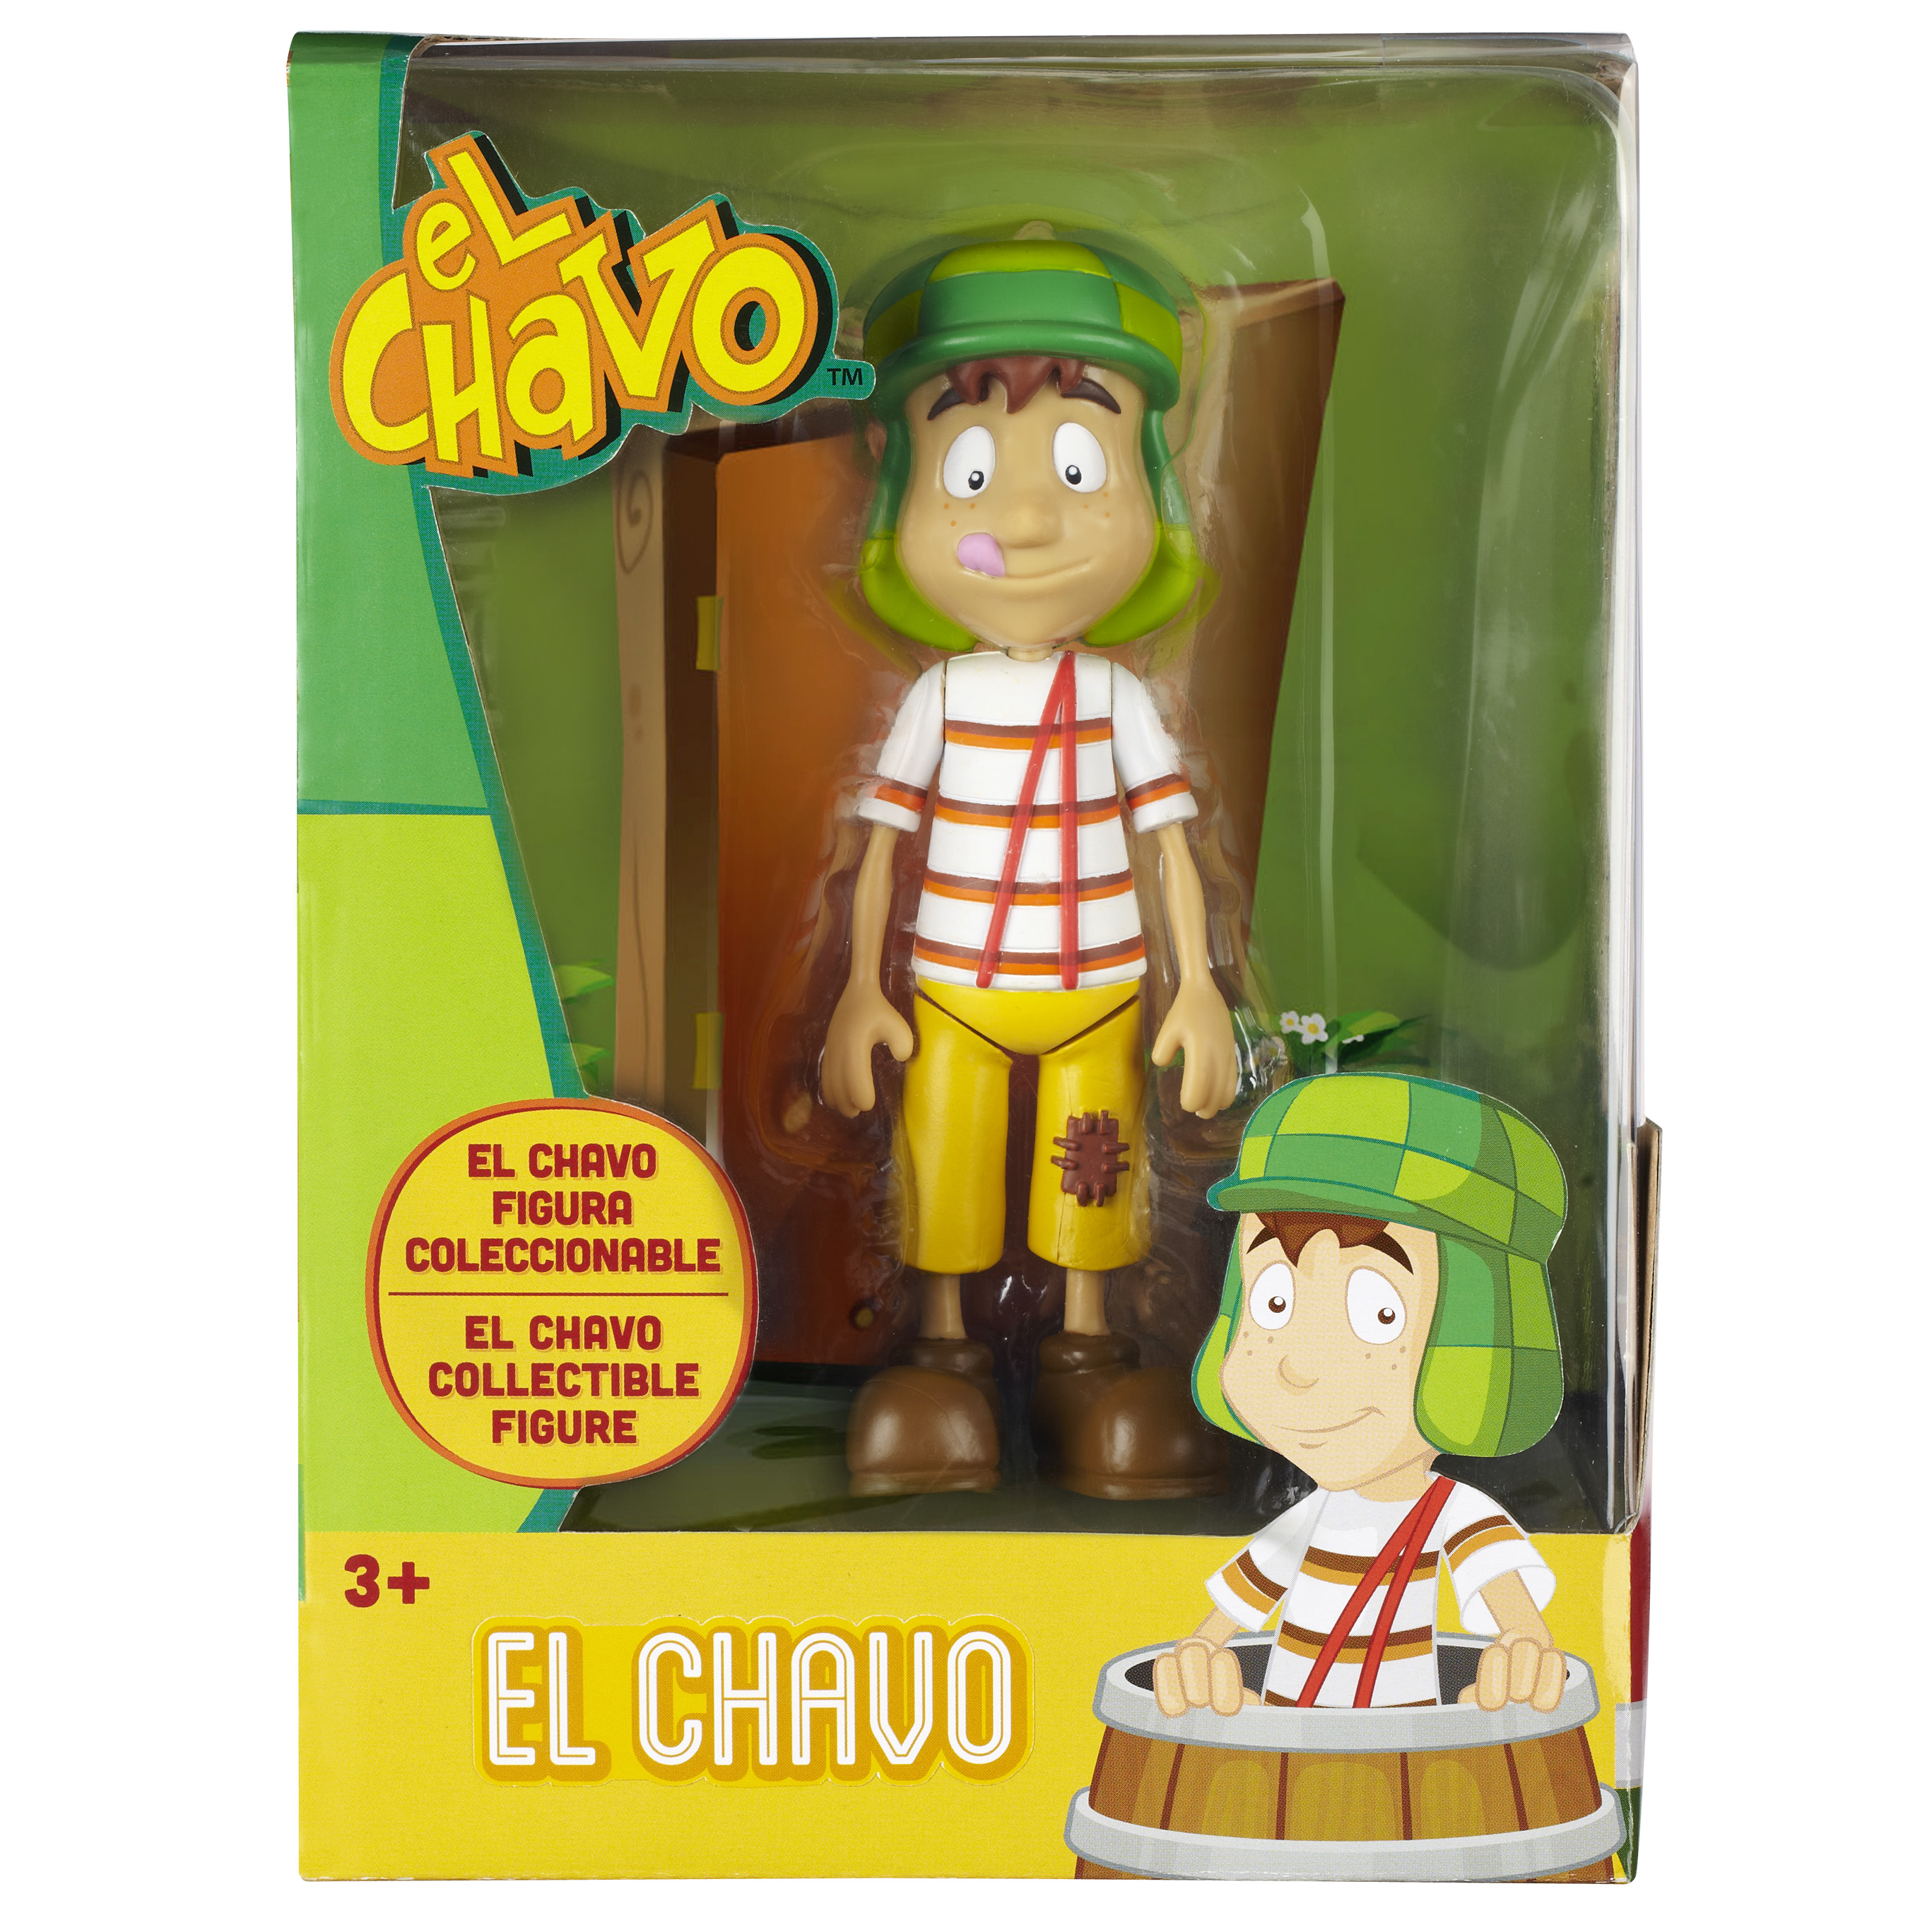 El Chavo y sus vecinos llegan a las grandes tiendas (Fotos)